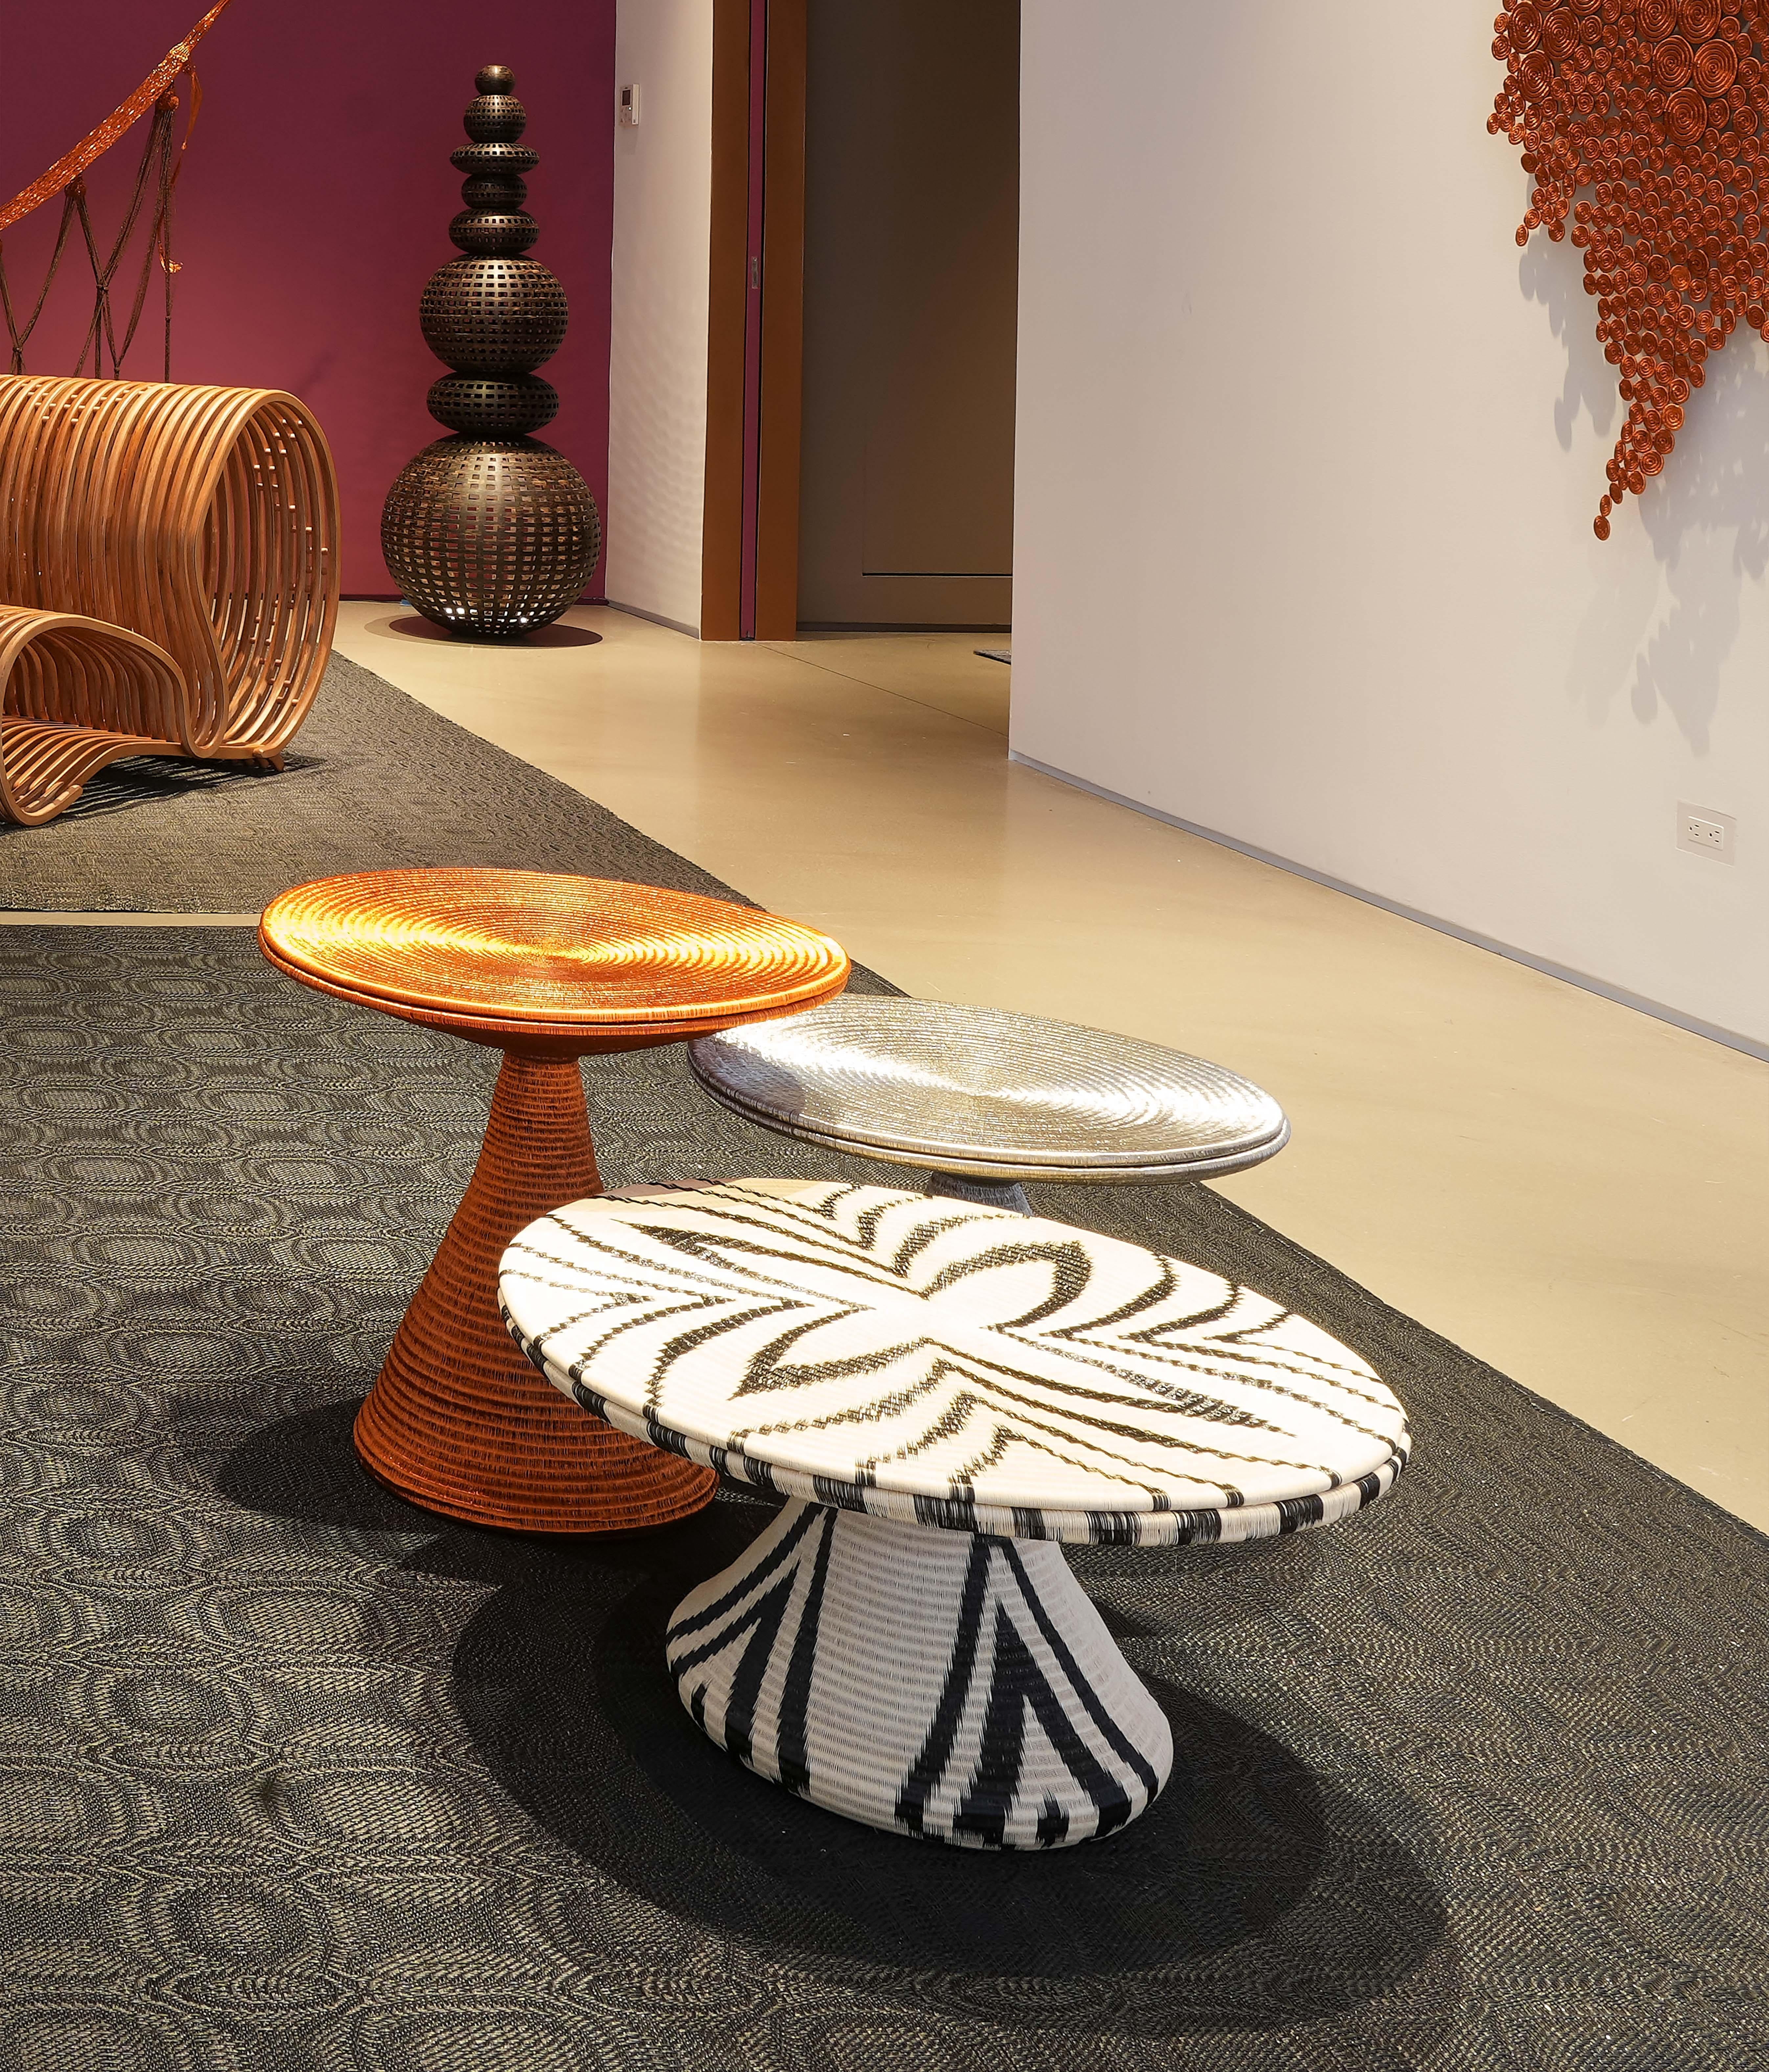 Die Werregues Tables sind ein Trio von Hechizoos exquisiten, gewundenen Kreationen, die das Engagement des Studios für Innovation und Handwerkskunst veranschaulichen. Gefertigt aus einer harmonischen Mischung aus Vinyl und Werregue-Naturfaser, ist